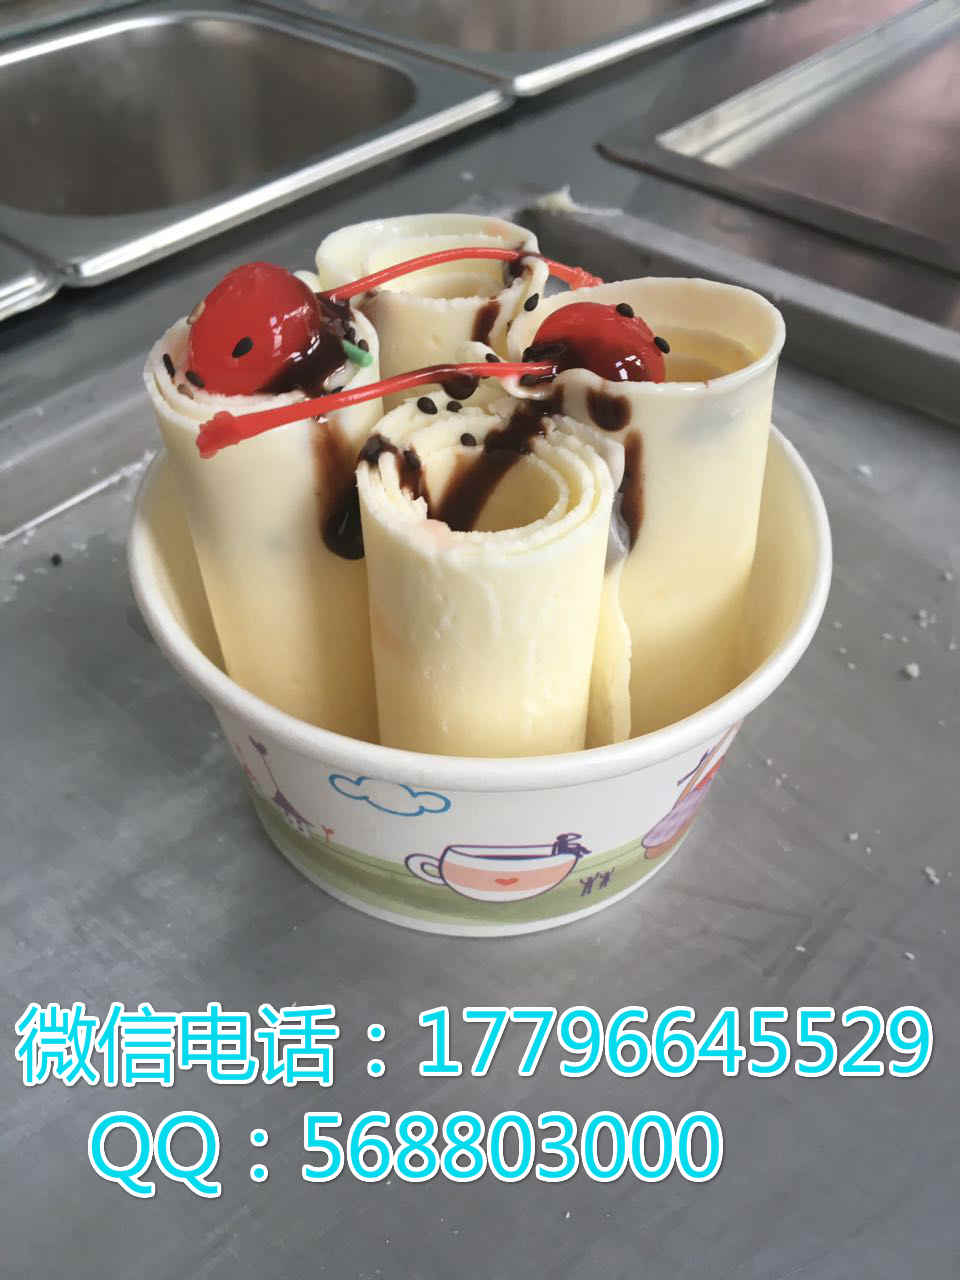 栾川炒酸奶机(维护)-栾川炒酸奶机厂直销